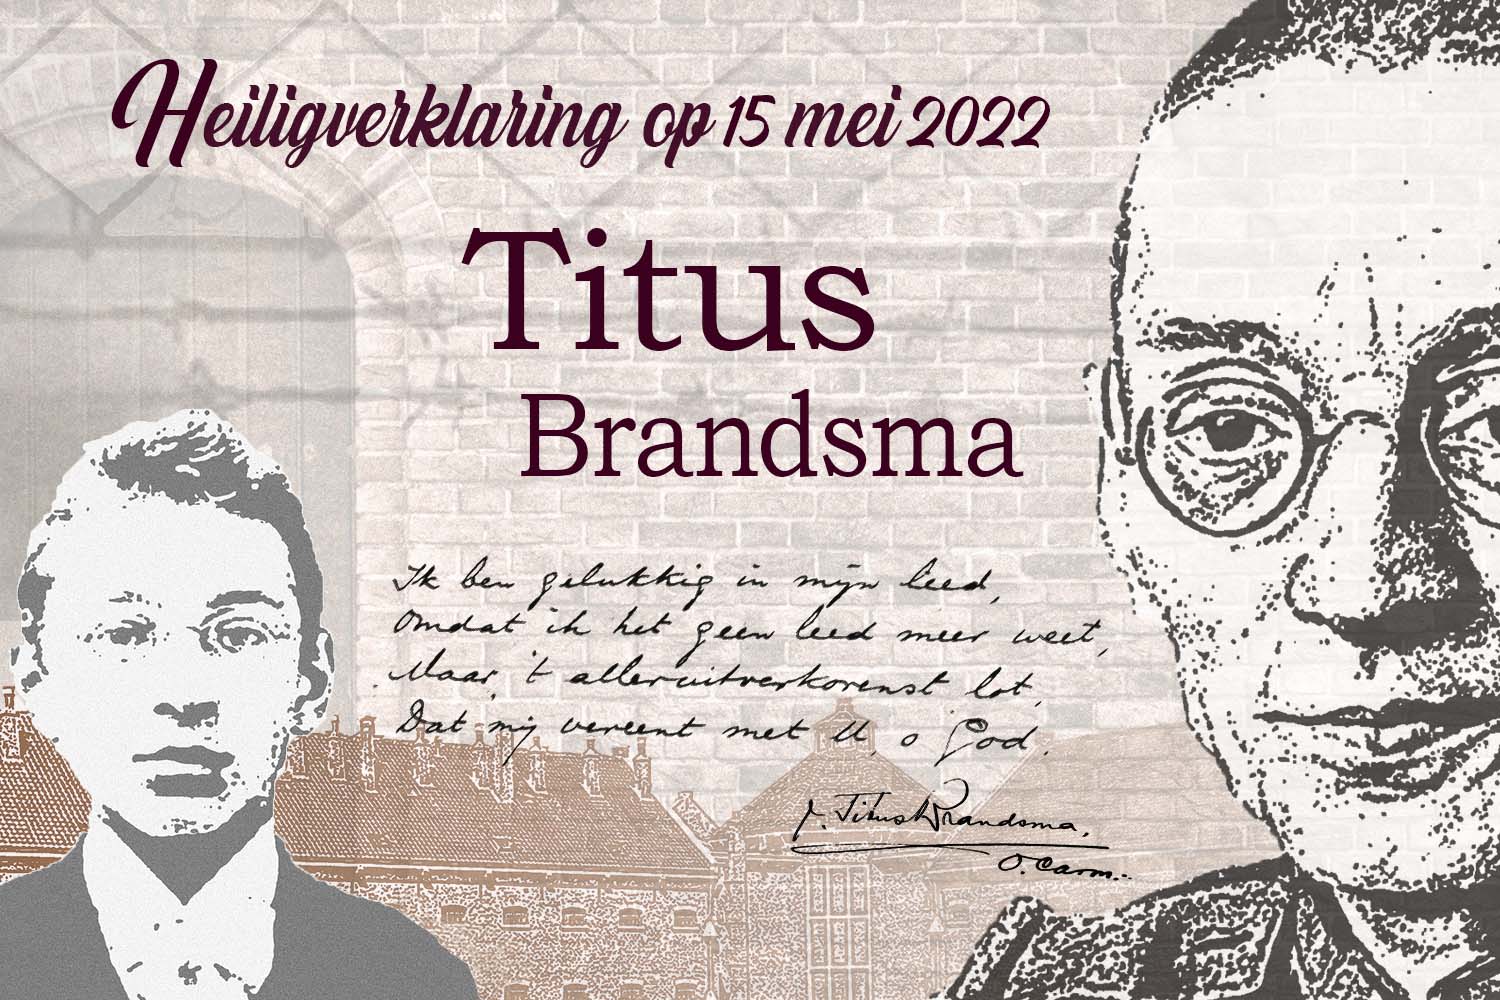 op 15 mei 2022 wordt Titus Brandsma Heilig Verklaard door Paus Franciscus